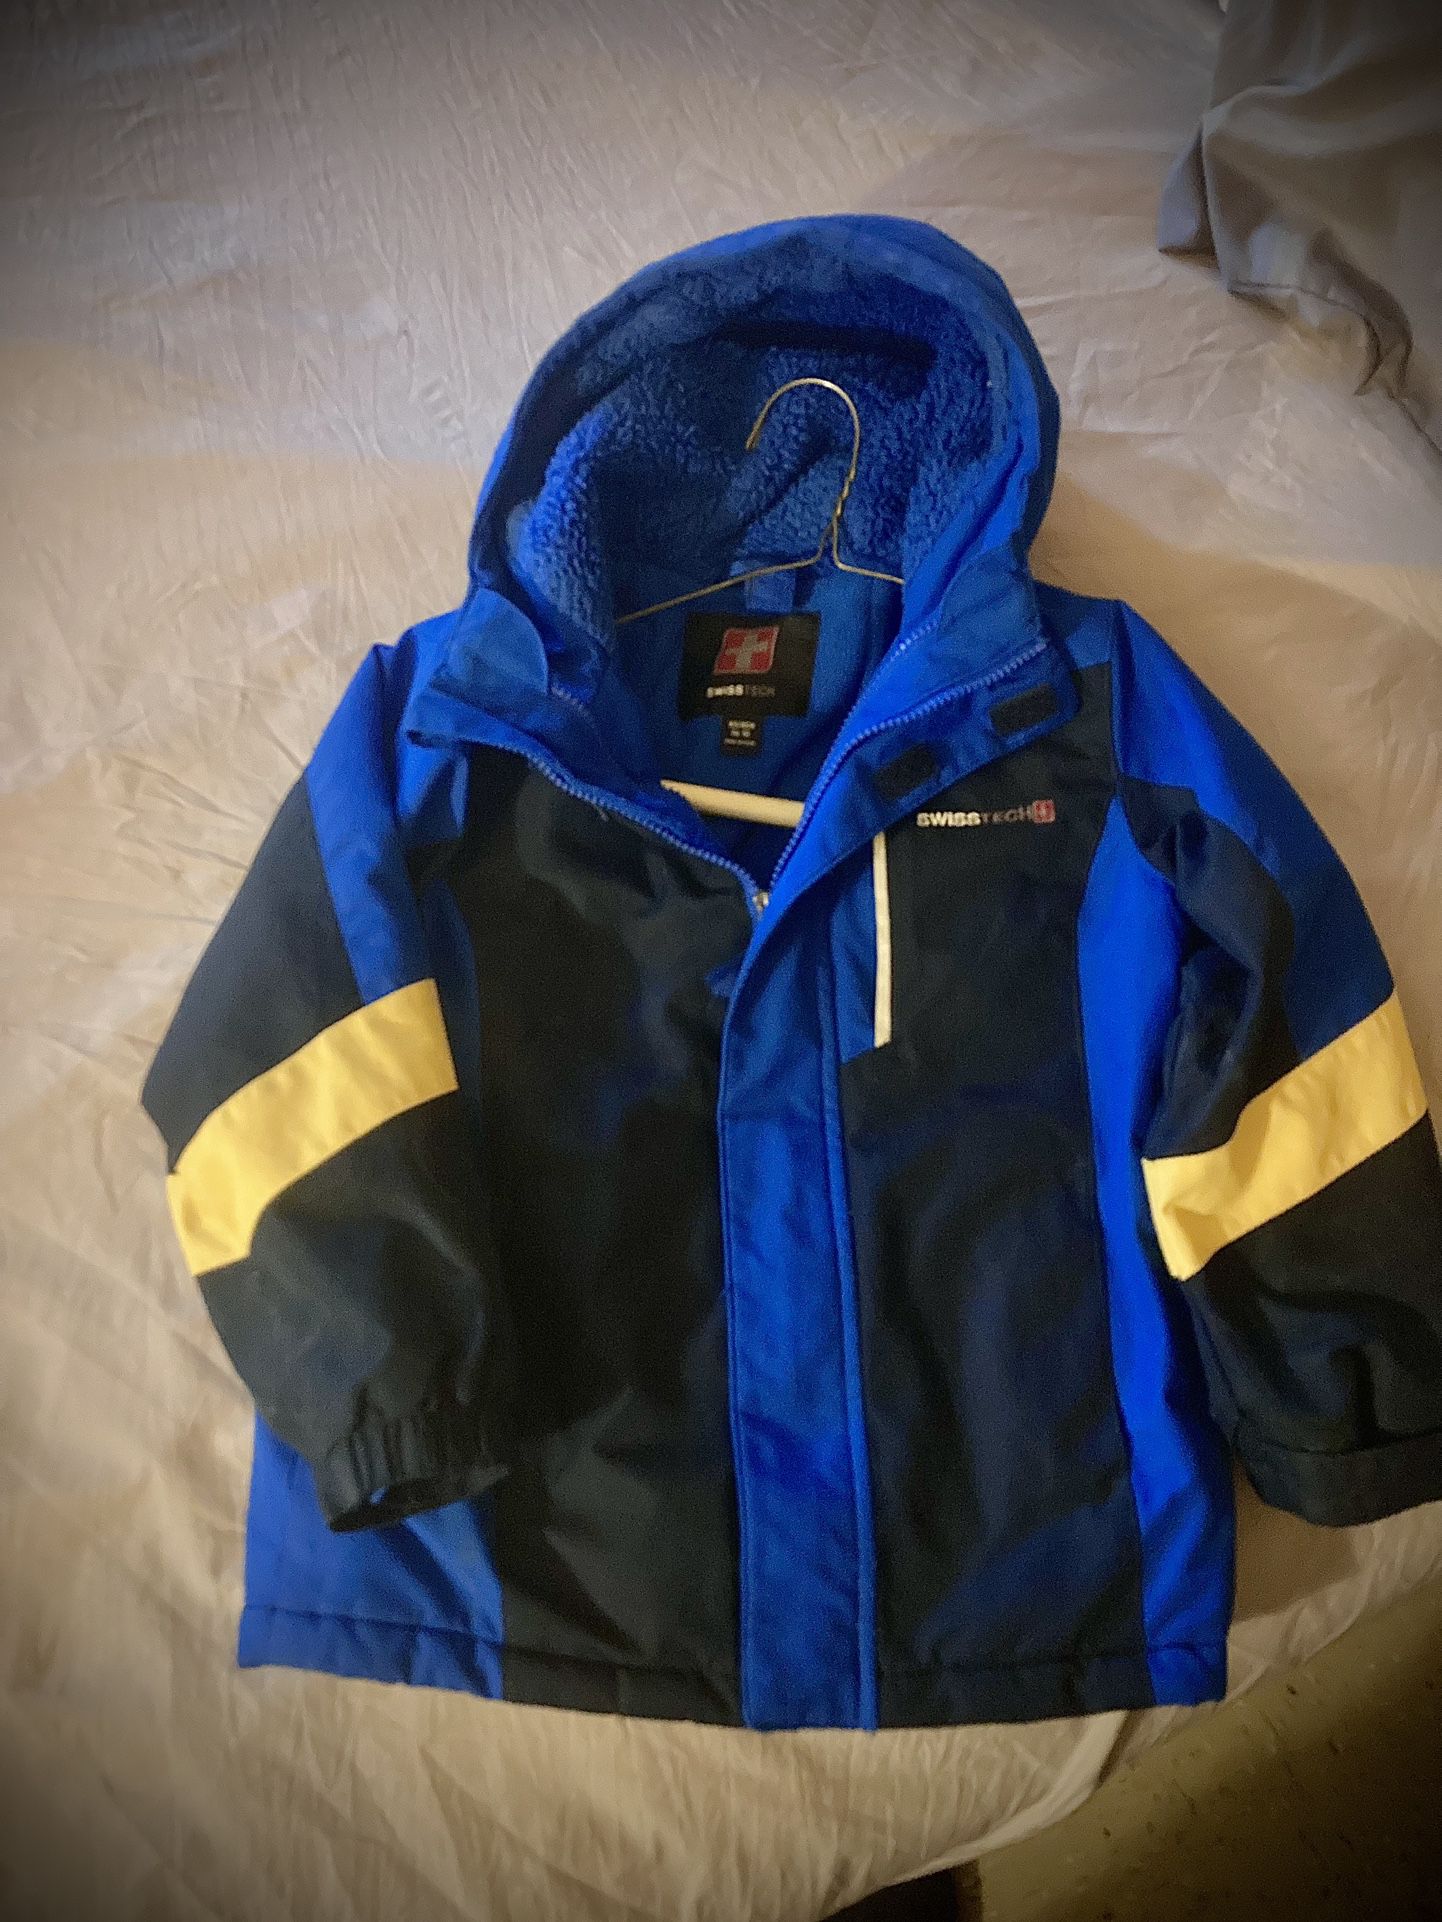 Swiss Tech Blue Fleece Lined  Jacket Coat W/Hood Boys 4-5 Xs 